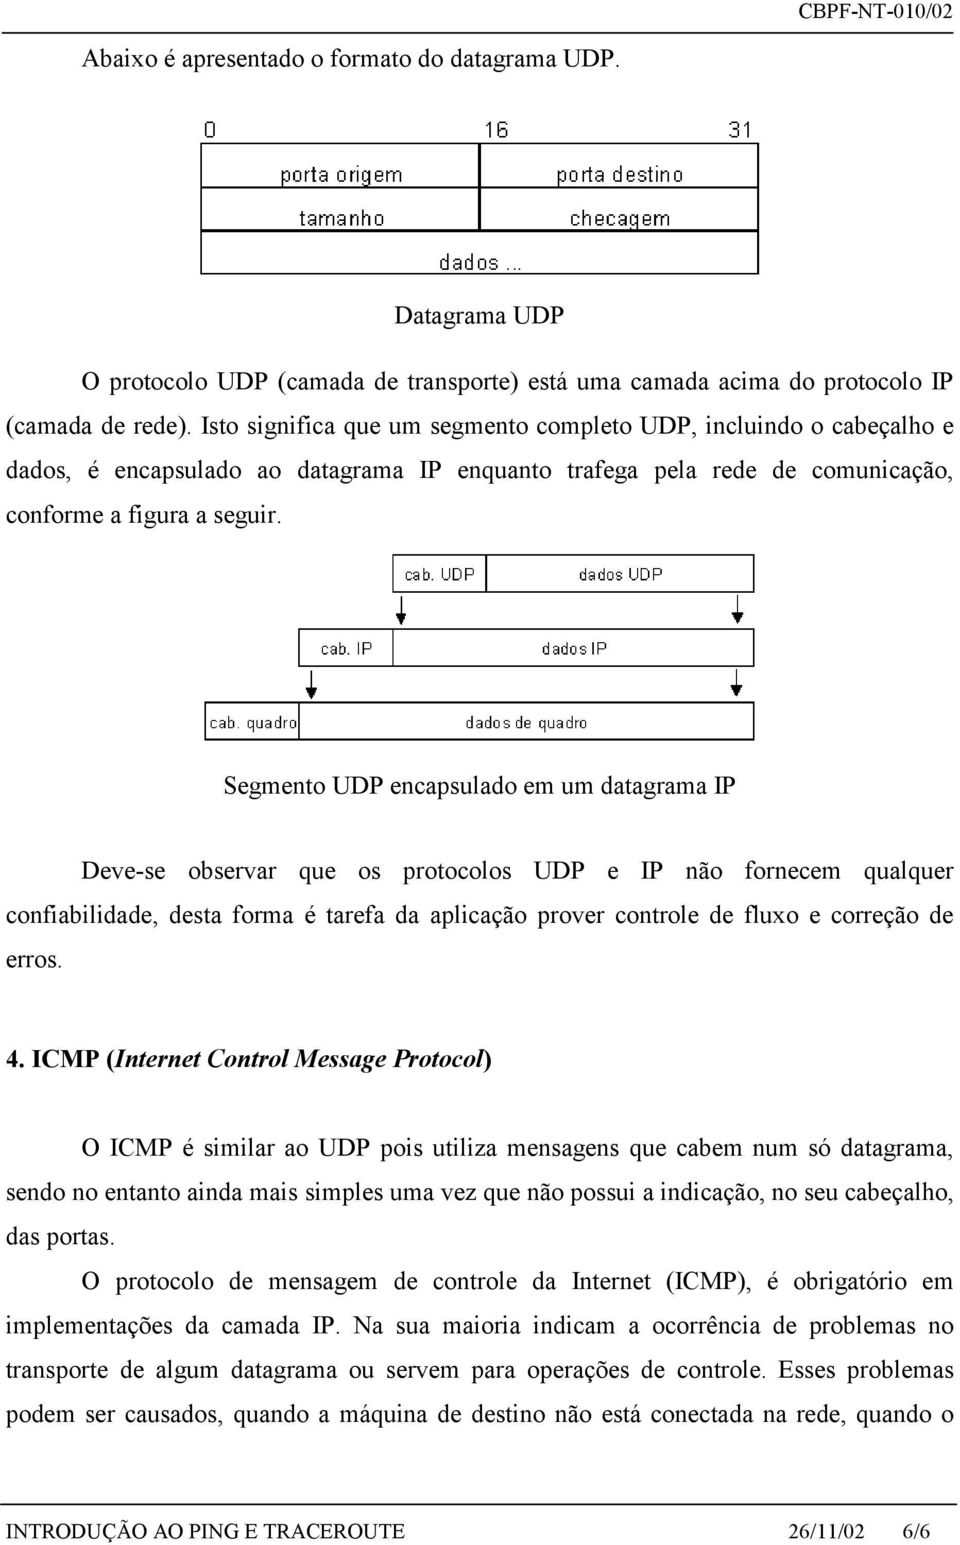 Segmento UDP encapsulado em um datagrama IP Deve-se observar que os protocolos UDP e IP não fornecem qualquer confiabilidade, desta forma é tarefa da aplicação prover controle de fluxo e correção de